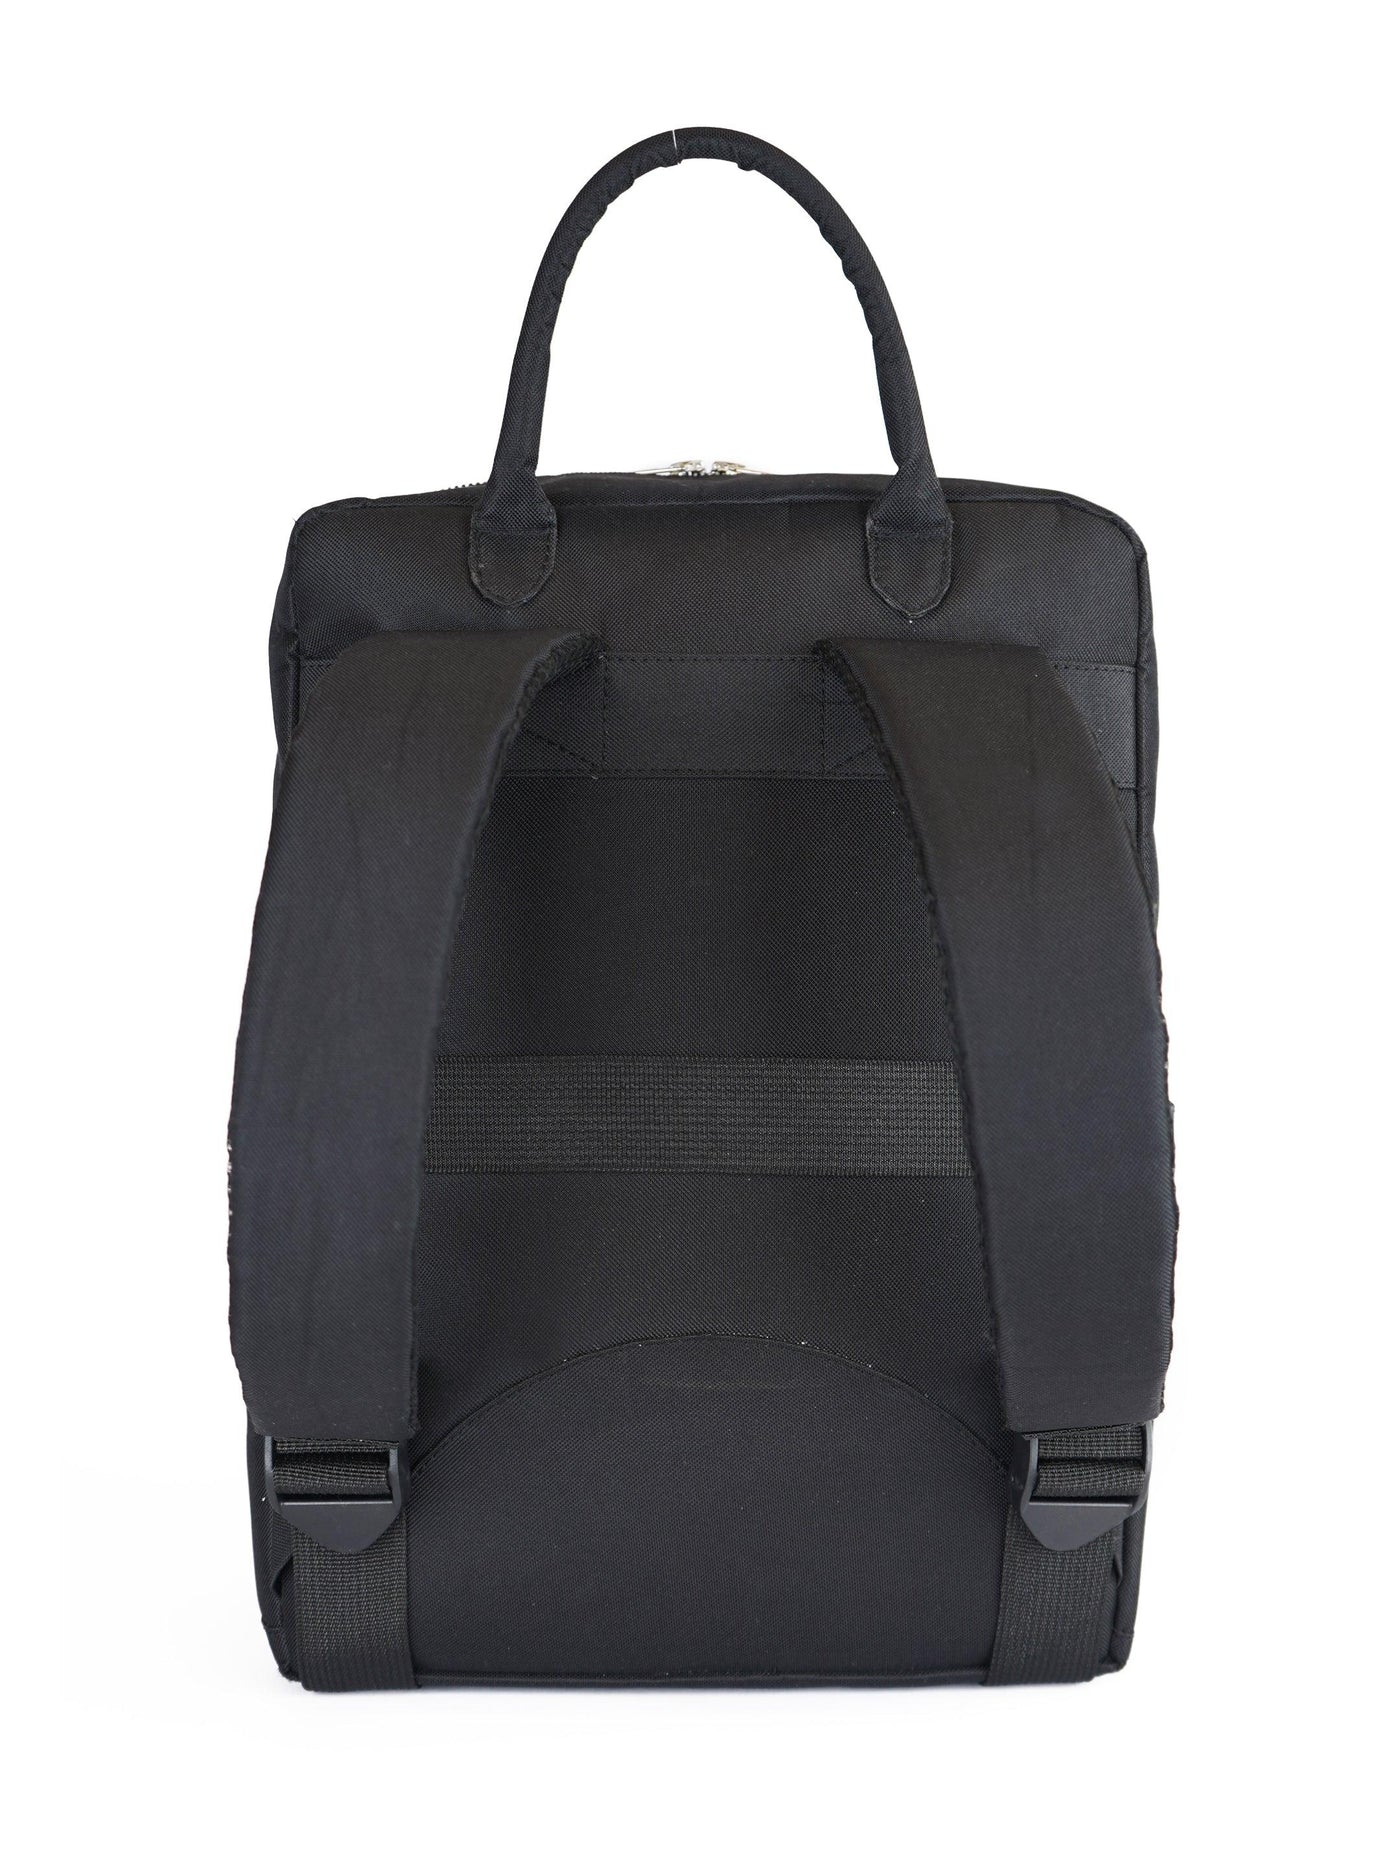 Den Backpack (Black)